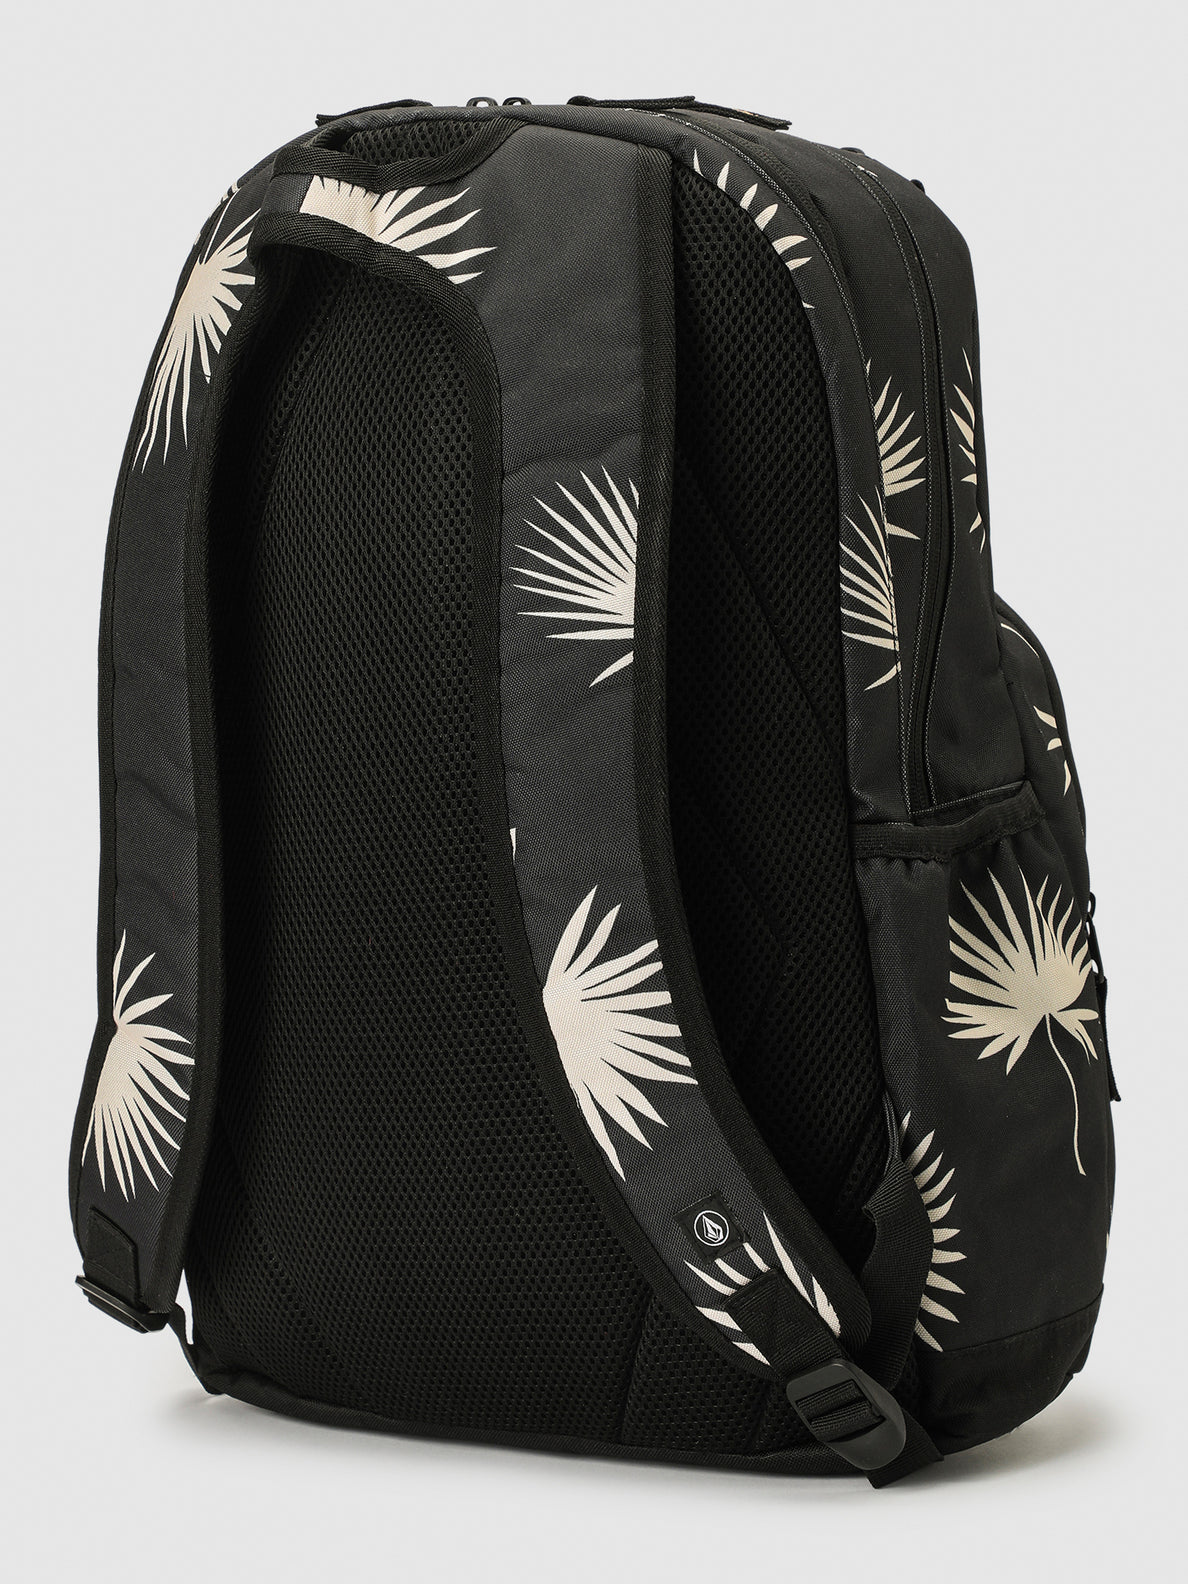 Patch Attack Backpack - Vintage Black